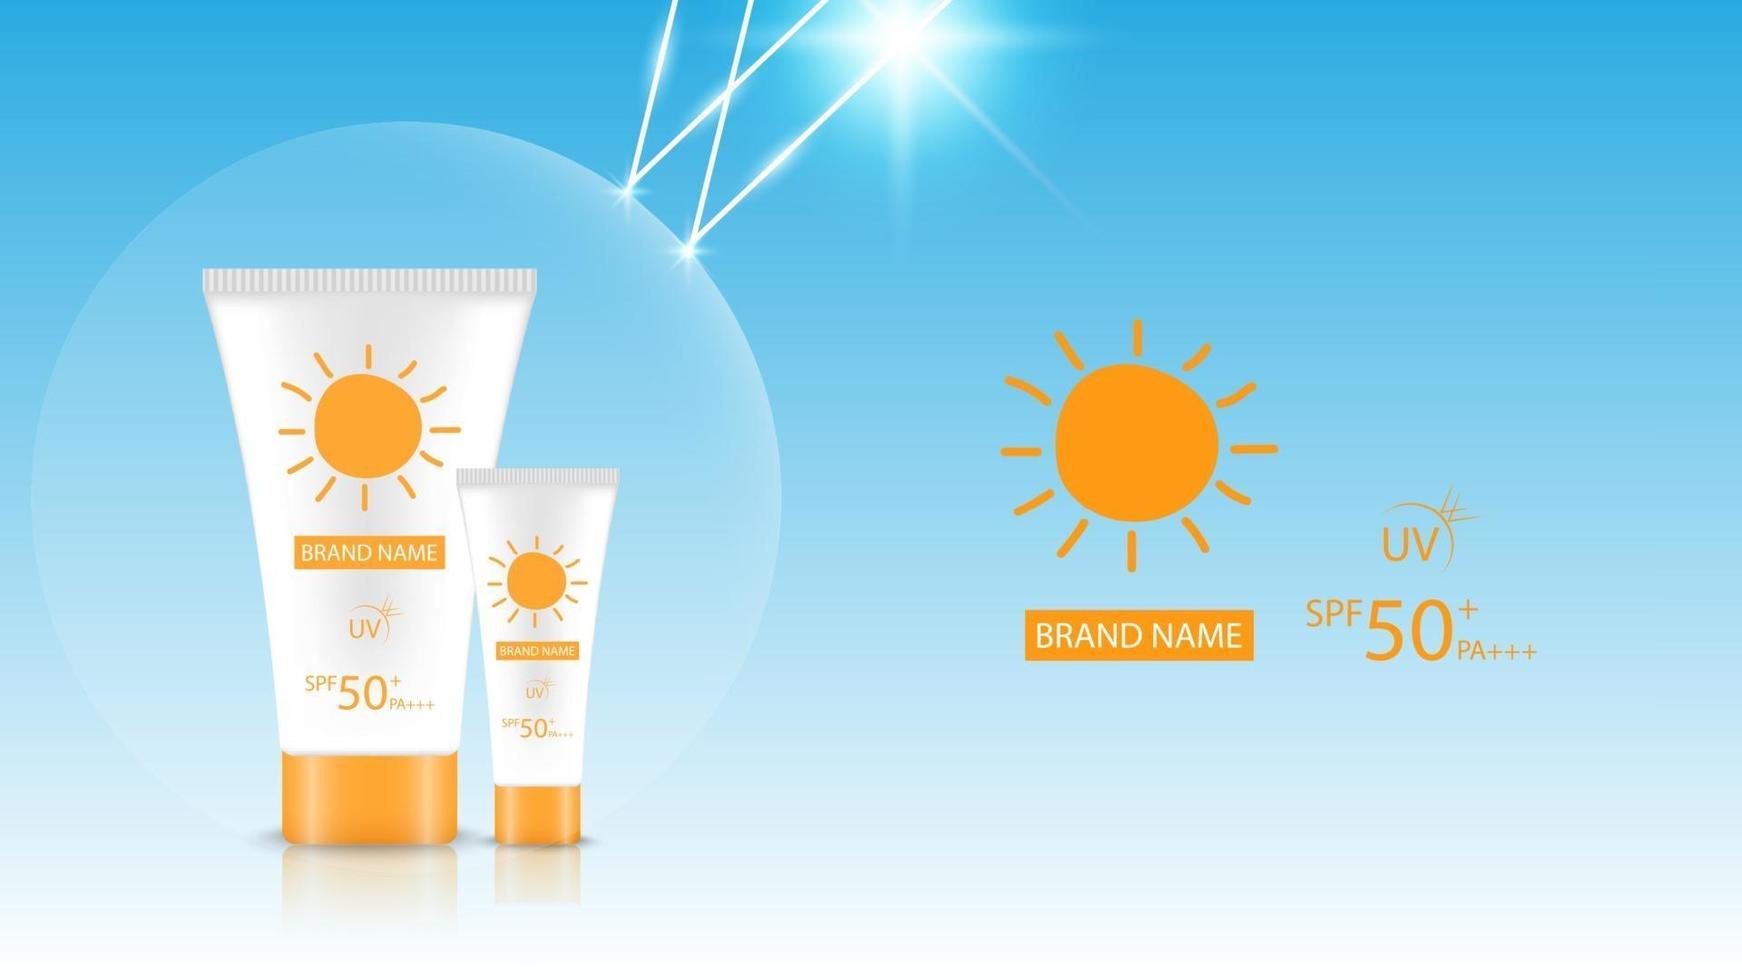 mockup di design del prodotto con protezione solare, design pubblicitario cosmetico, illustrazione vettoriale